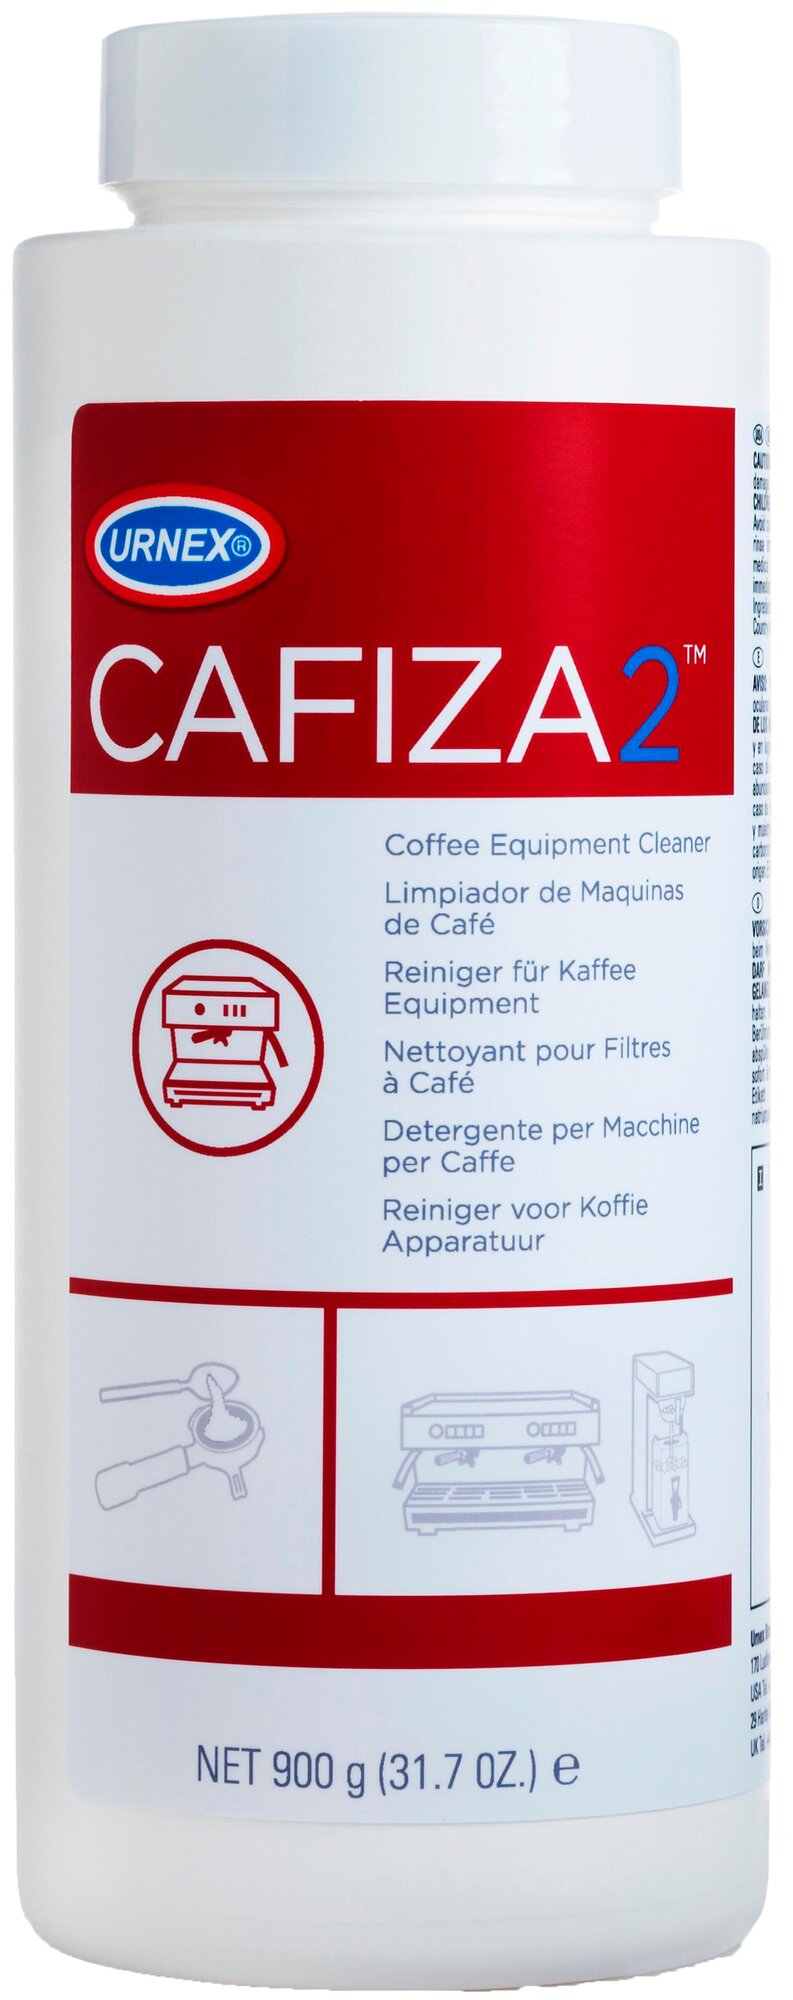 Для чистки от кофейных масел Cafiza2 Urnex, 900 г - фотография № 1